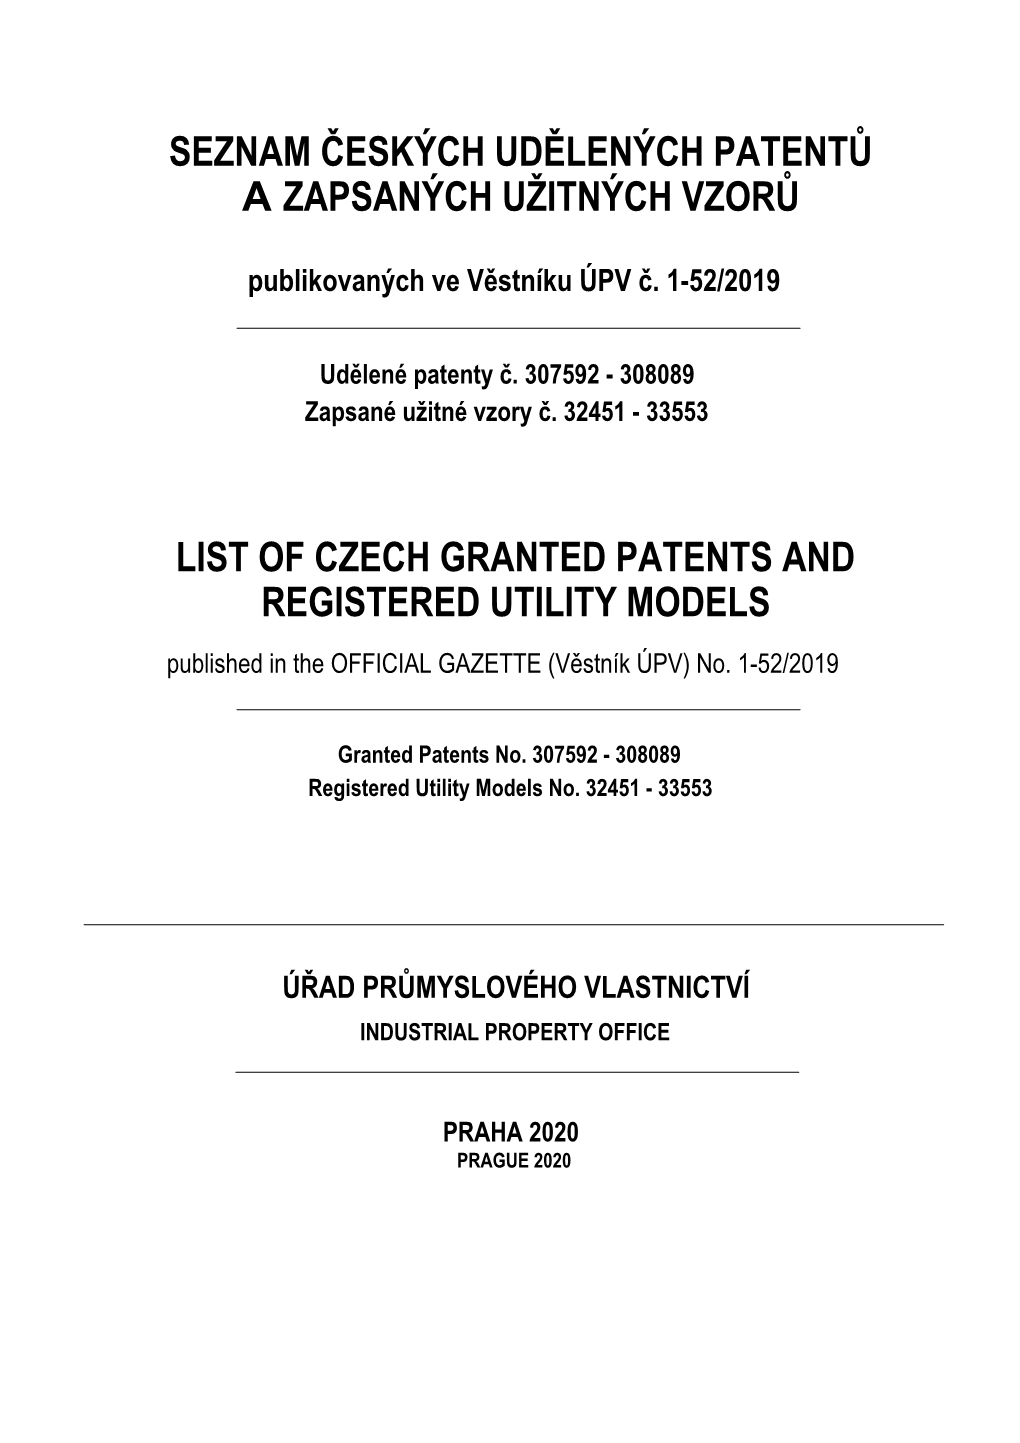 Seznam Českých Udělených Patentů a Zapsaných Užitných Vzorů